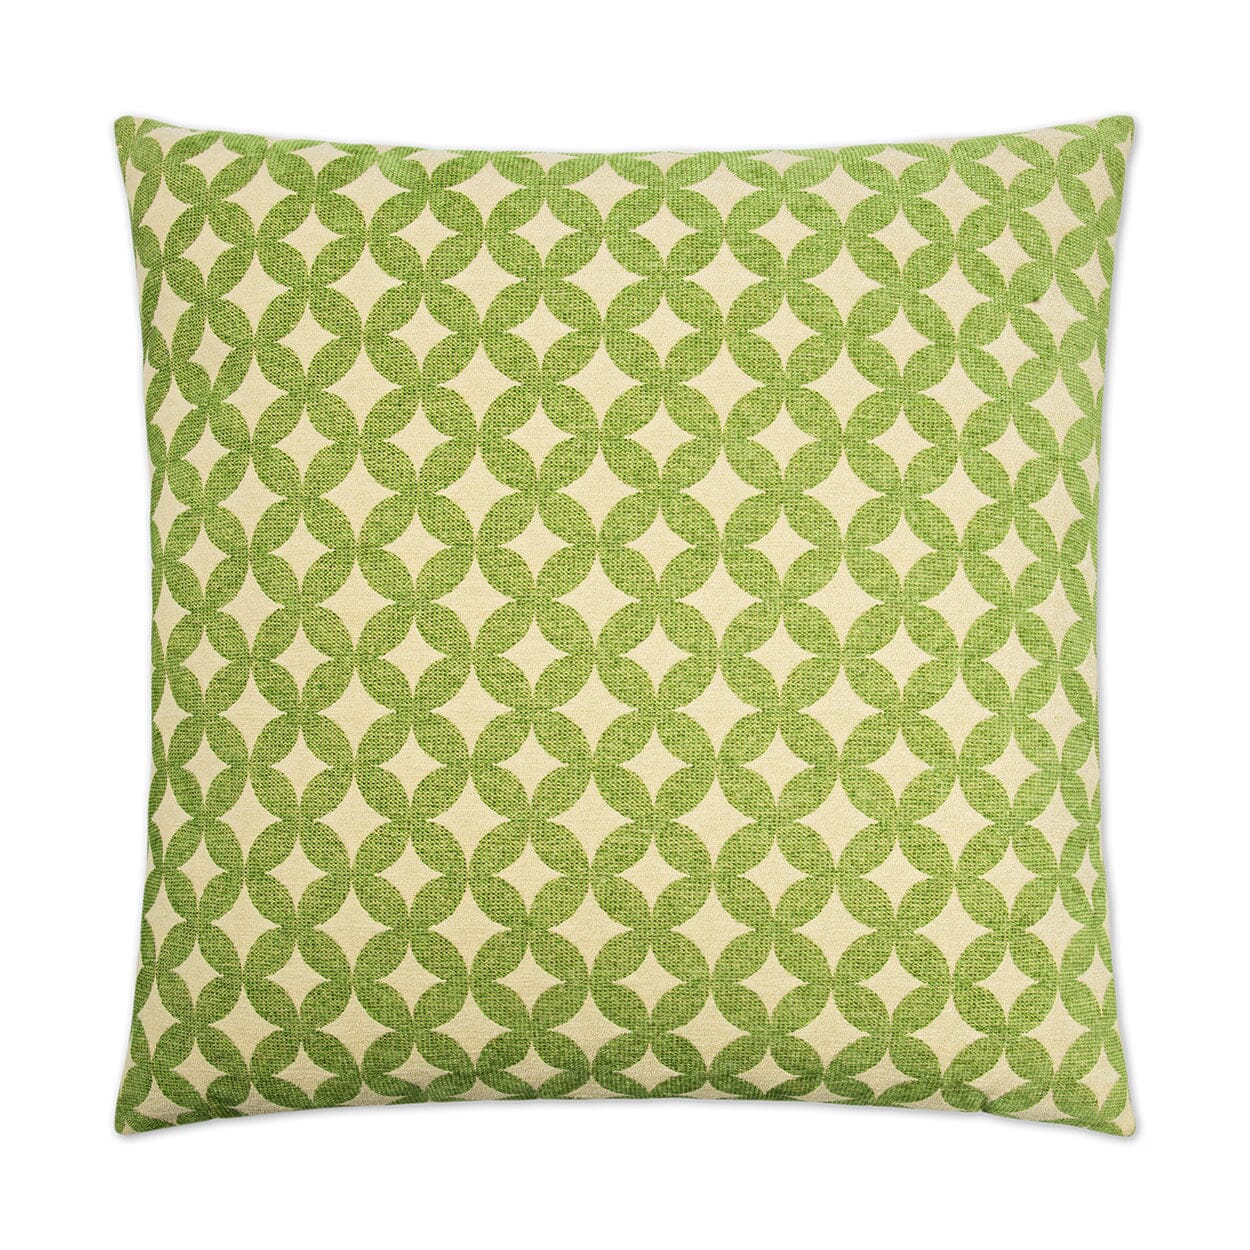 D.V. Kap Volt Decorative Throw Pillow | Green Pillows D.V Kap Home